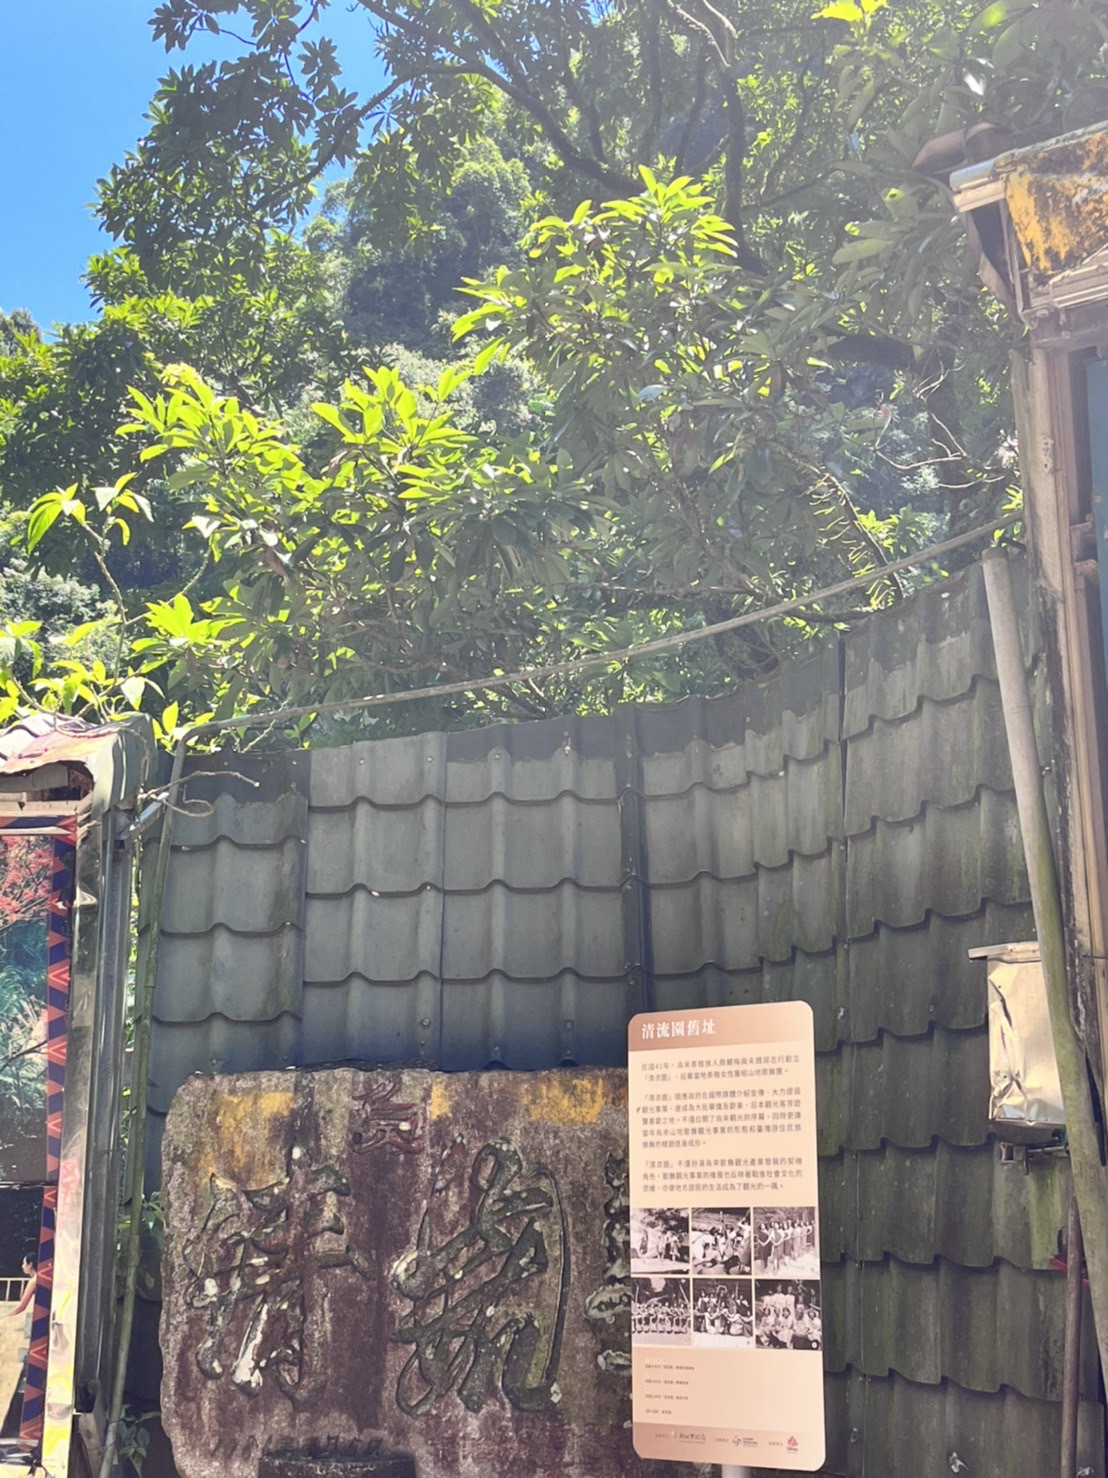 走讀景點之一「清流園」舊址，民國41年，烏來泰雅族人周麗梅與夫婿邱志行創立「清流園」，籌組山地歌舞團，拉開了烏來樂舞觀光的序幕。   圖：新北市原民局提供